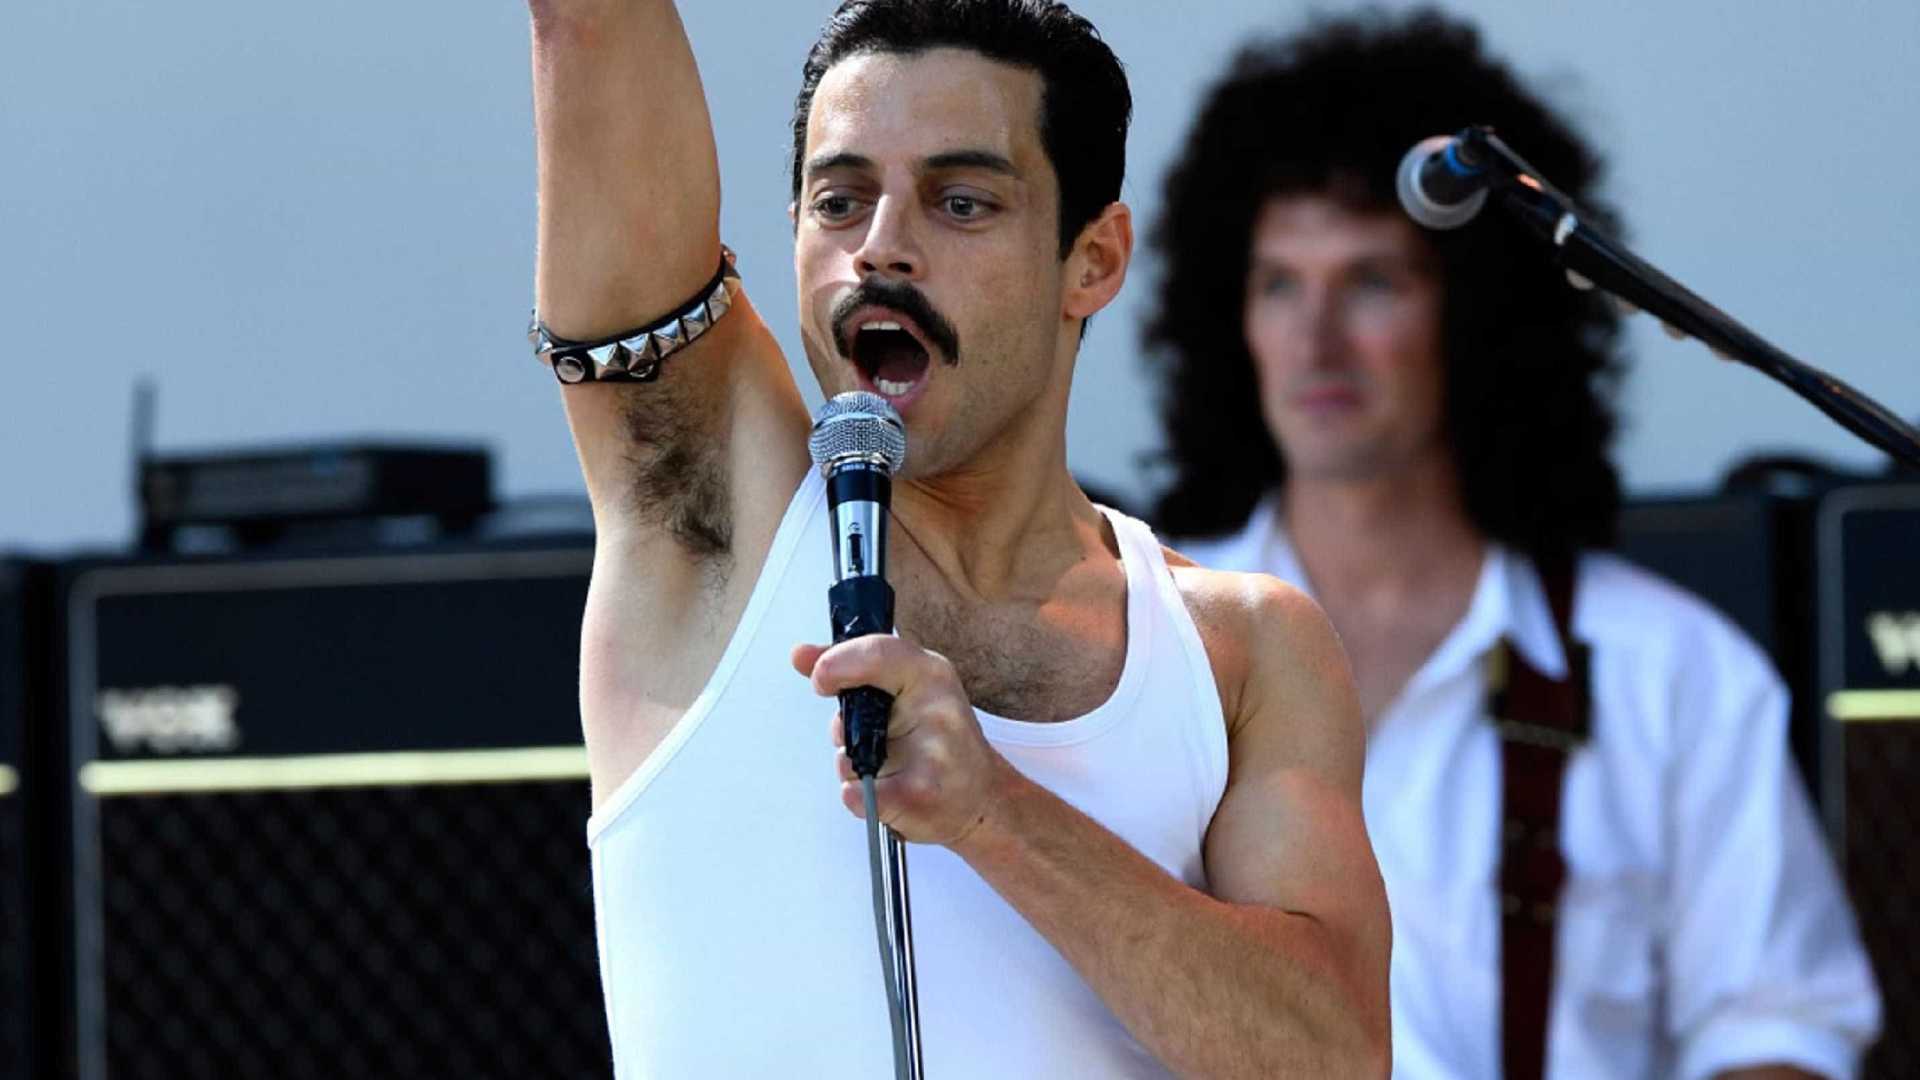 Imagem do filme Bohemian Rhapsody